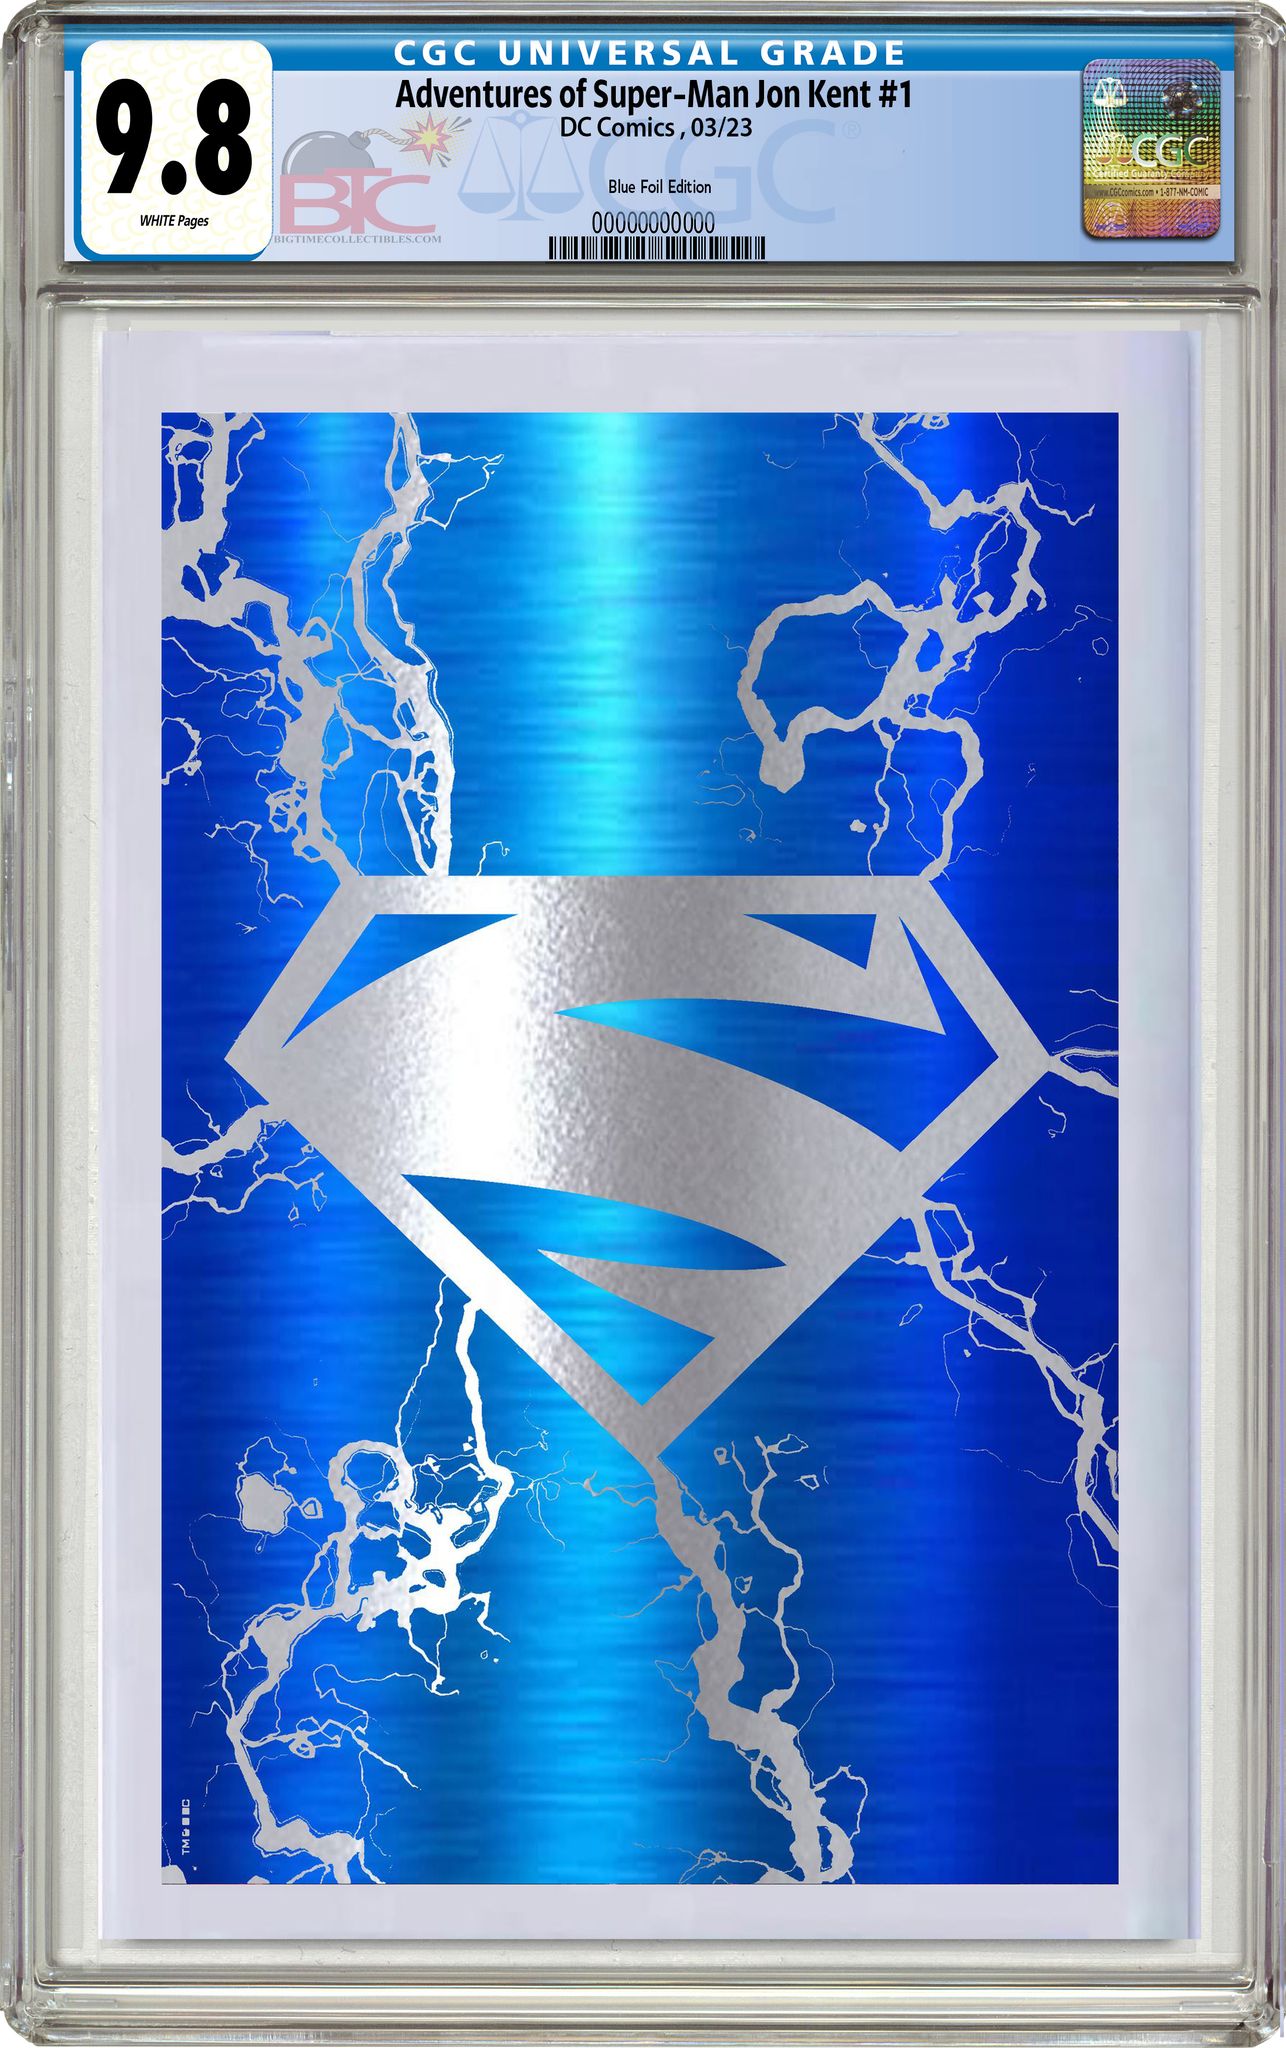 ADVENTURES OF SUPERMAN JON KENT #1 ELECTRIC BLUE FOIL EXCLUSIVE VARIANT (LIMIT 2)